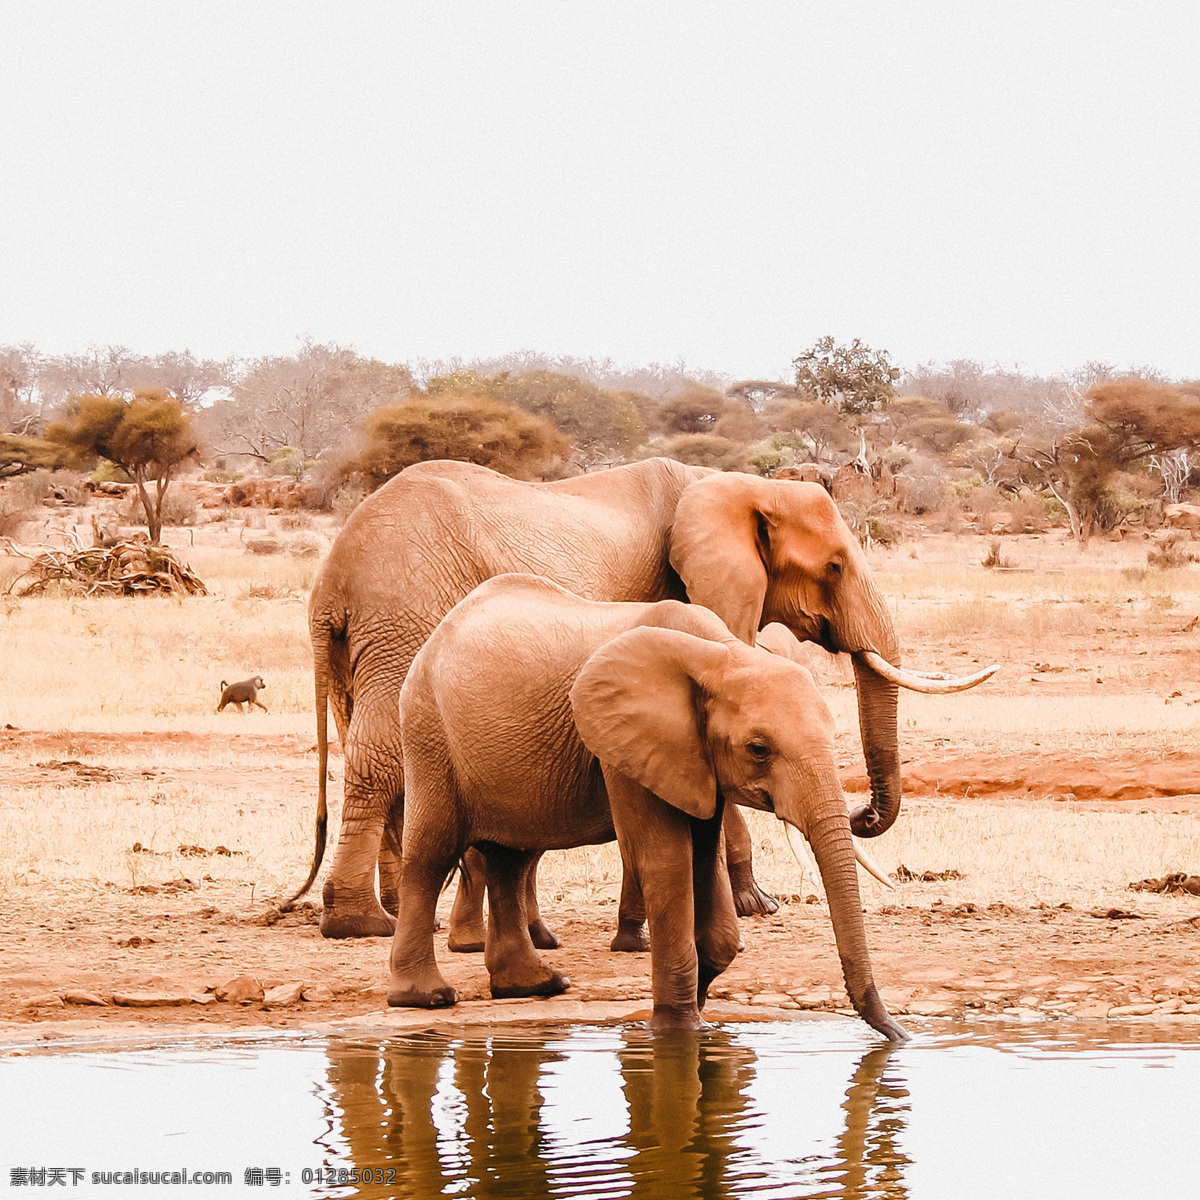 大象 小象 象群 夕阳 漫步 迁徙 野外 嬉戏 跋涉 动物 生物世界 野生动物